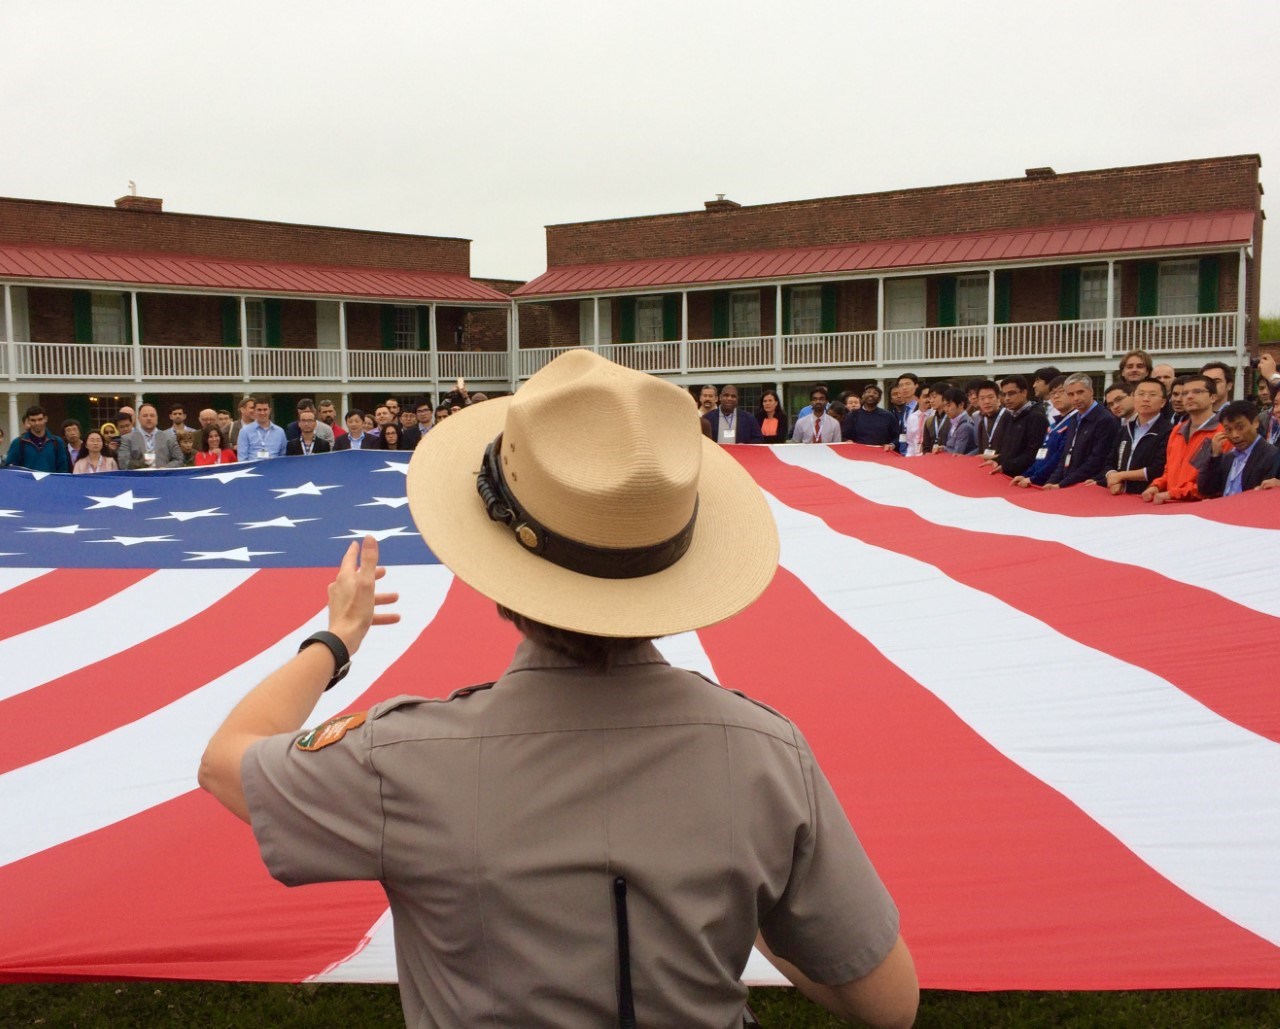 Ranger giving a flag program